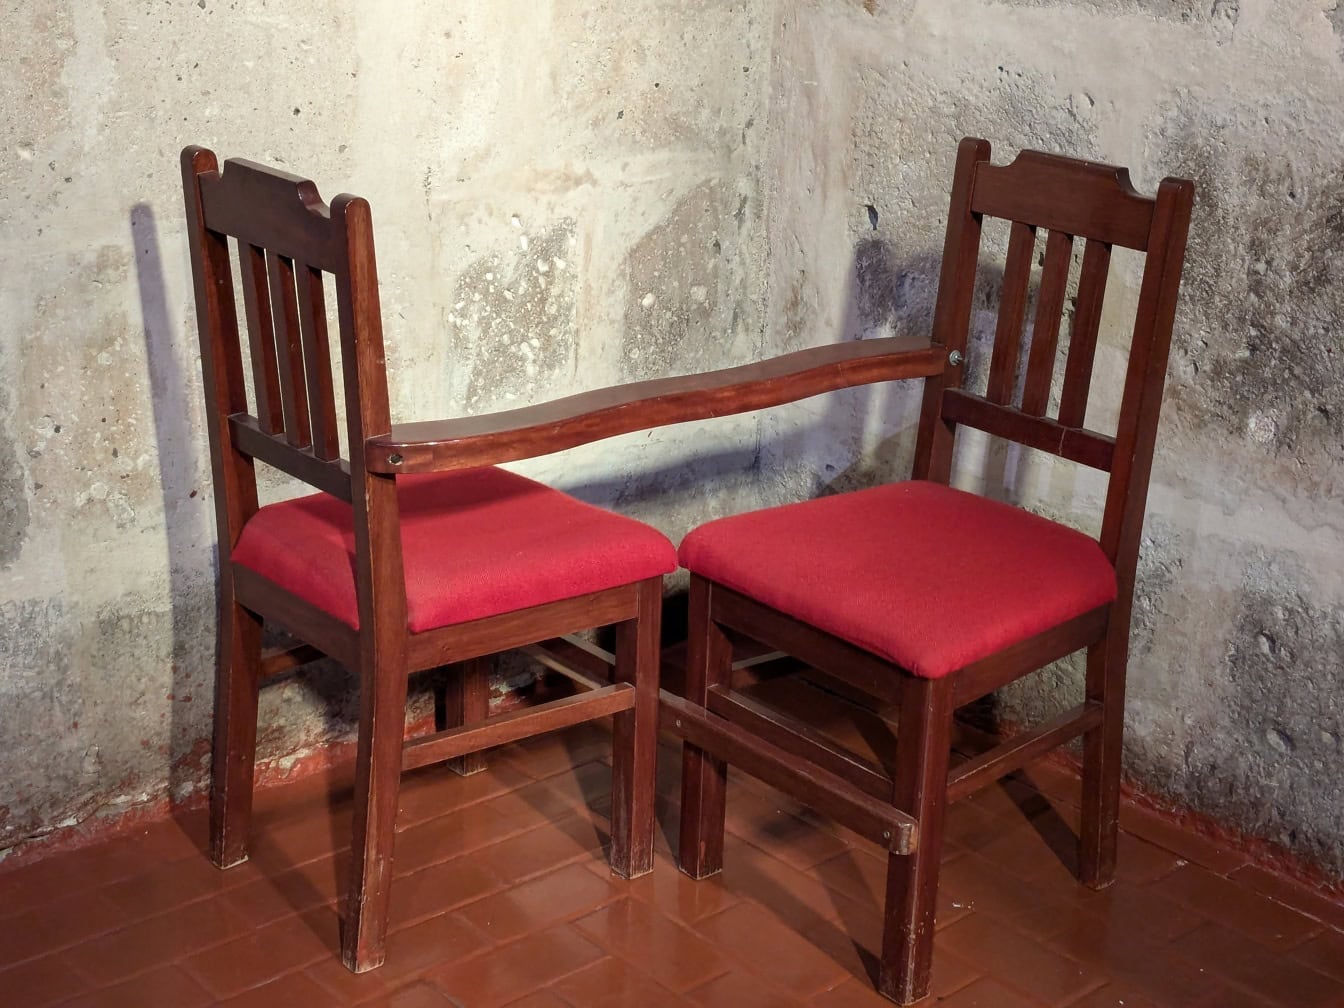 가톨릭 교회 구석에서 종교적인 목적으로 사용되는 빨간 쿠션이 있는 두 개의 연결된 나무 의자